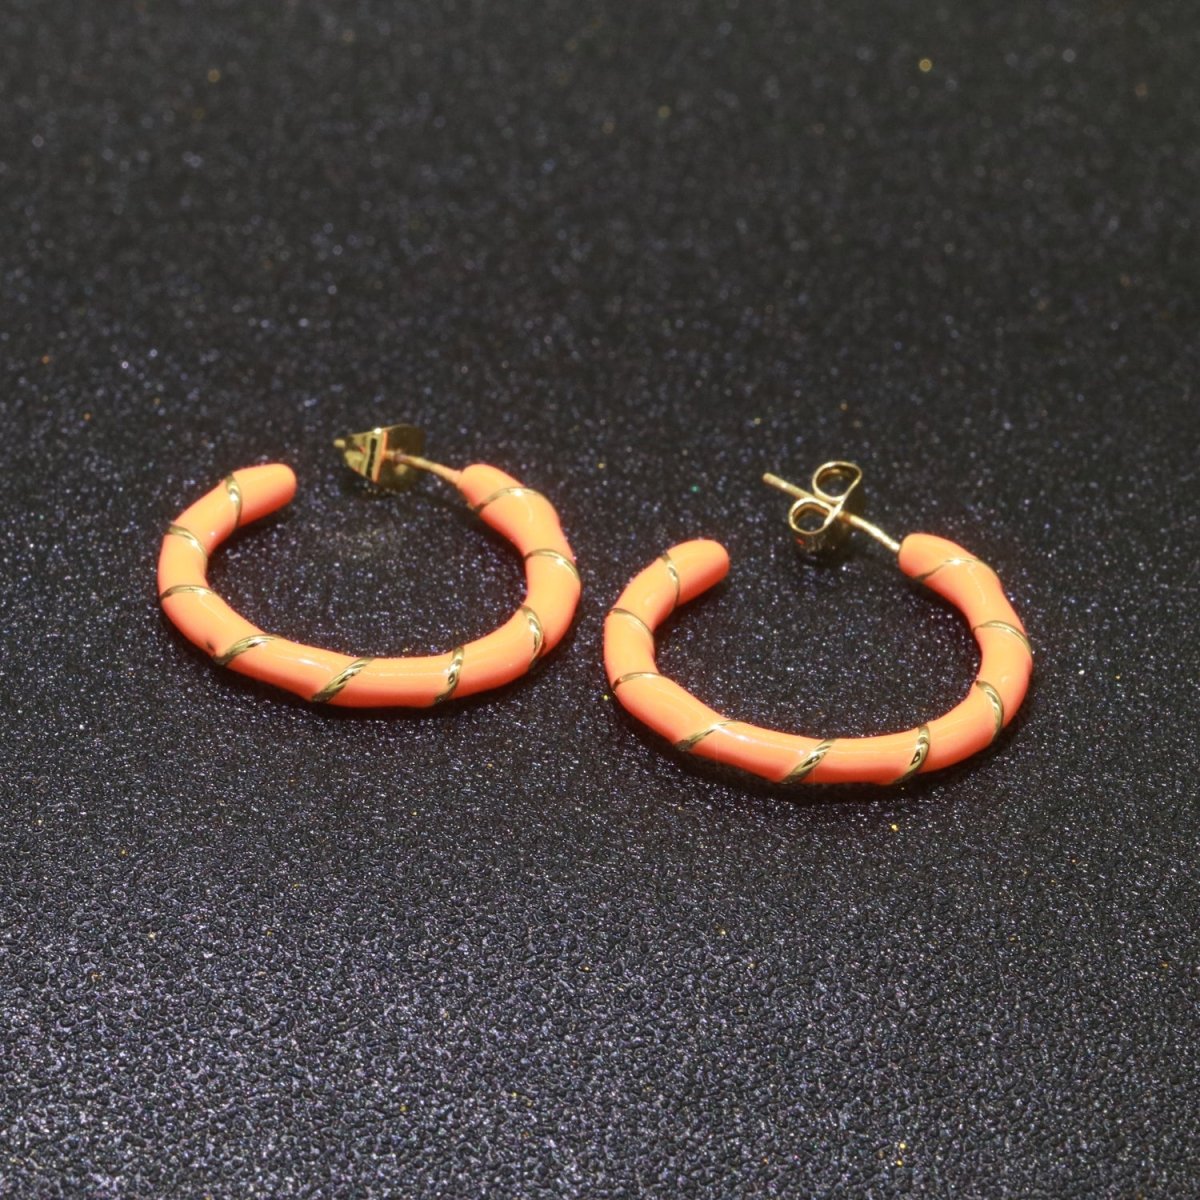 Orange Enamel Hoop Earring with Gold Swirl 26mm Hoop earring Jewelry Gift T-005 - DLUXCA